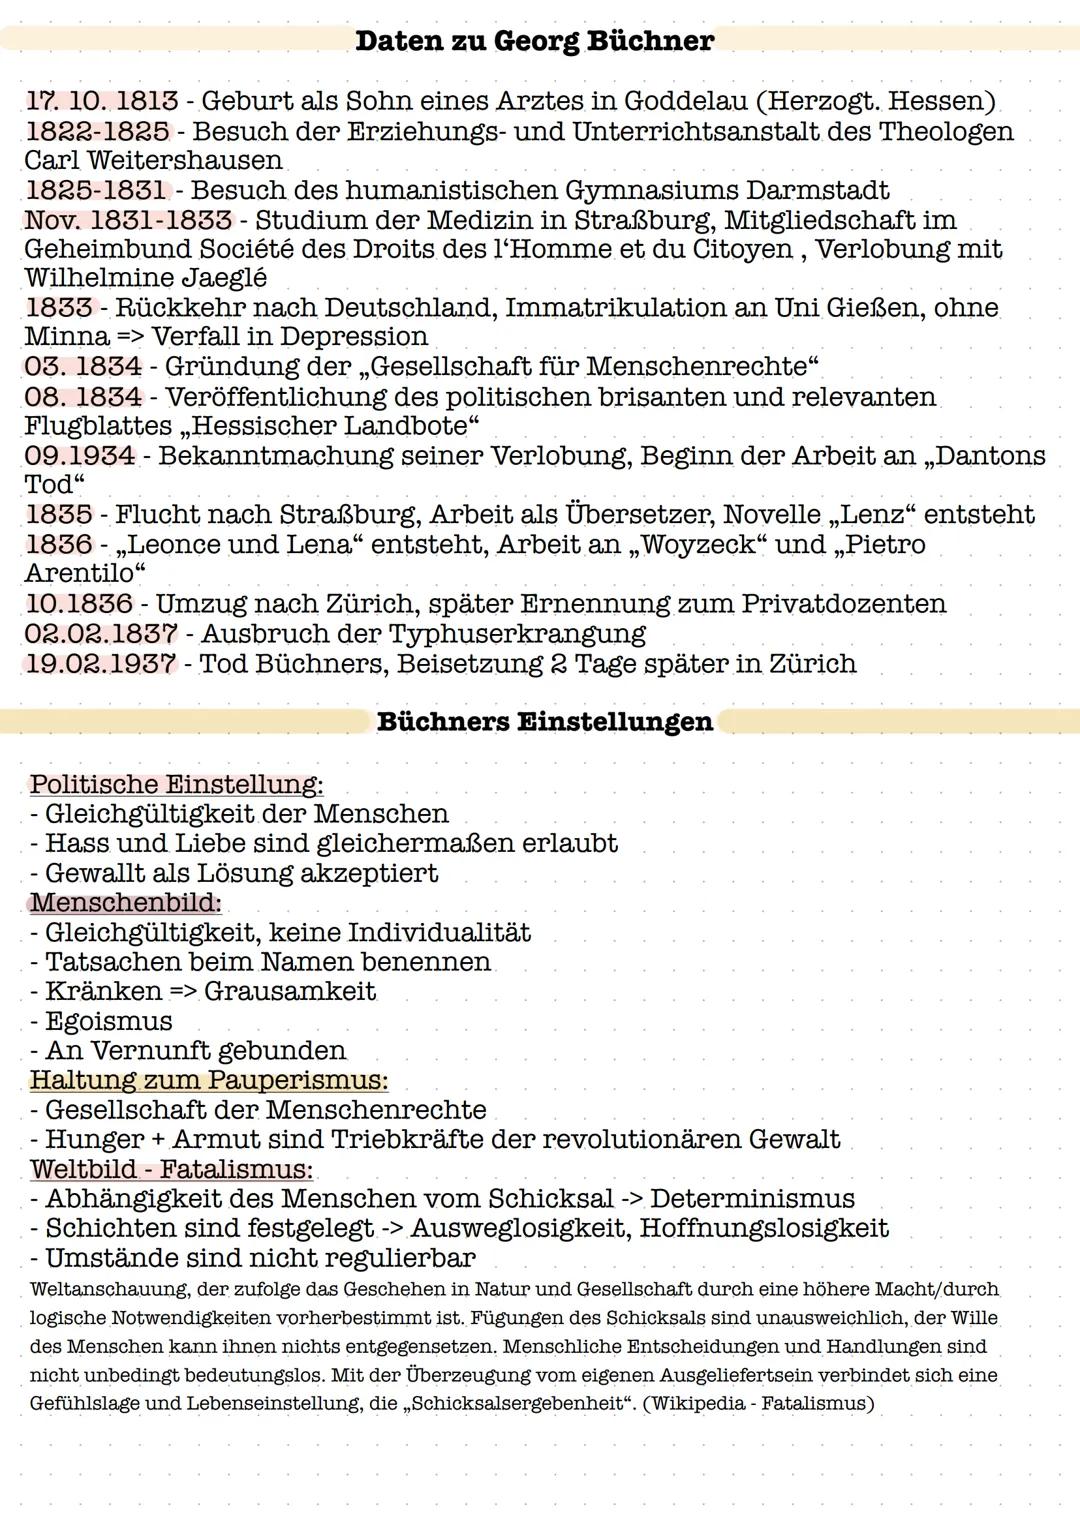 Daten zu Georg Büchner
17. 10. 1813 - Geburt als Sohn eines Arztes in Goddelau (Herzogt. Hessen)
1822-1825 - Besuch der Erziehungs- und Unte